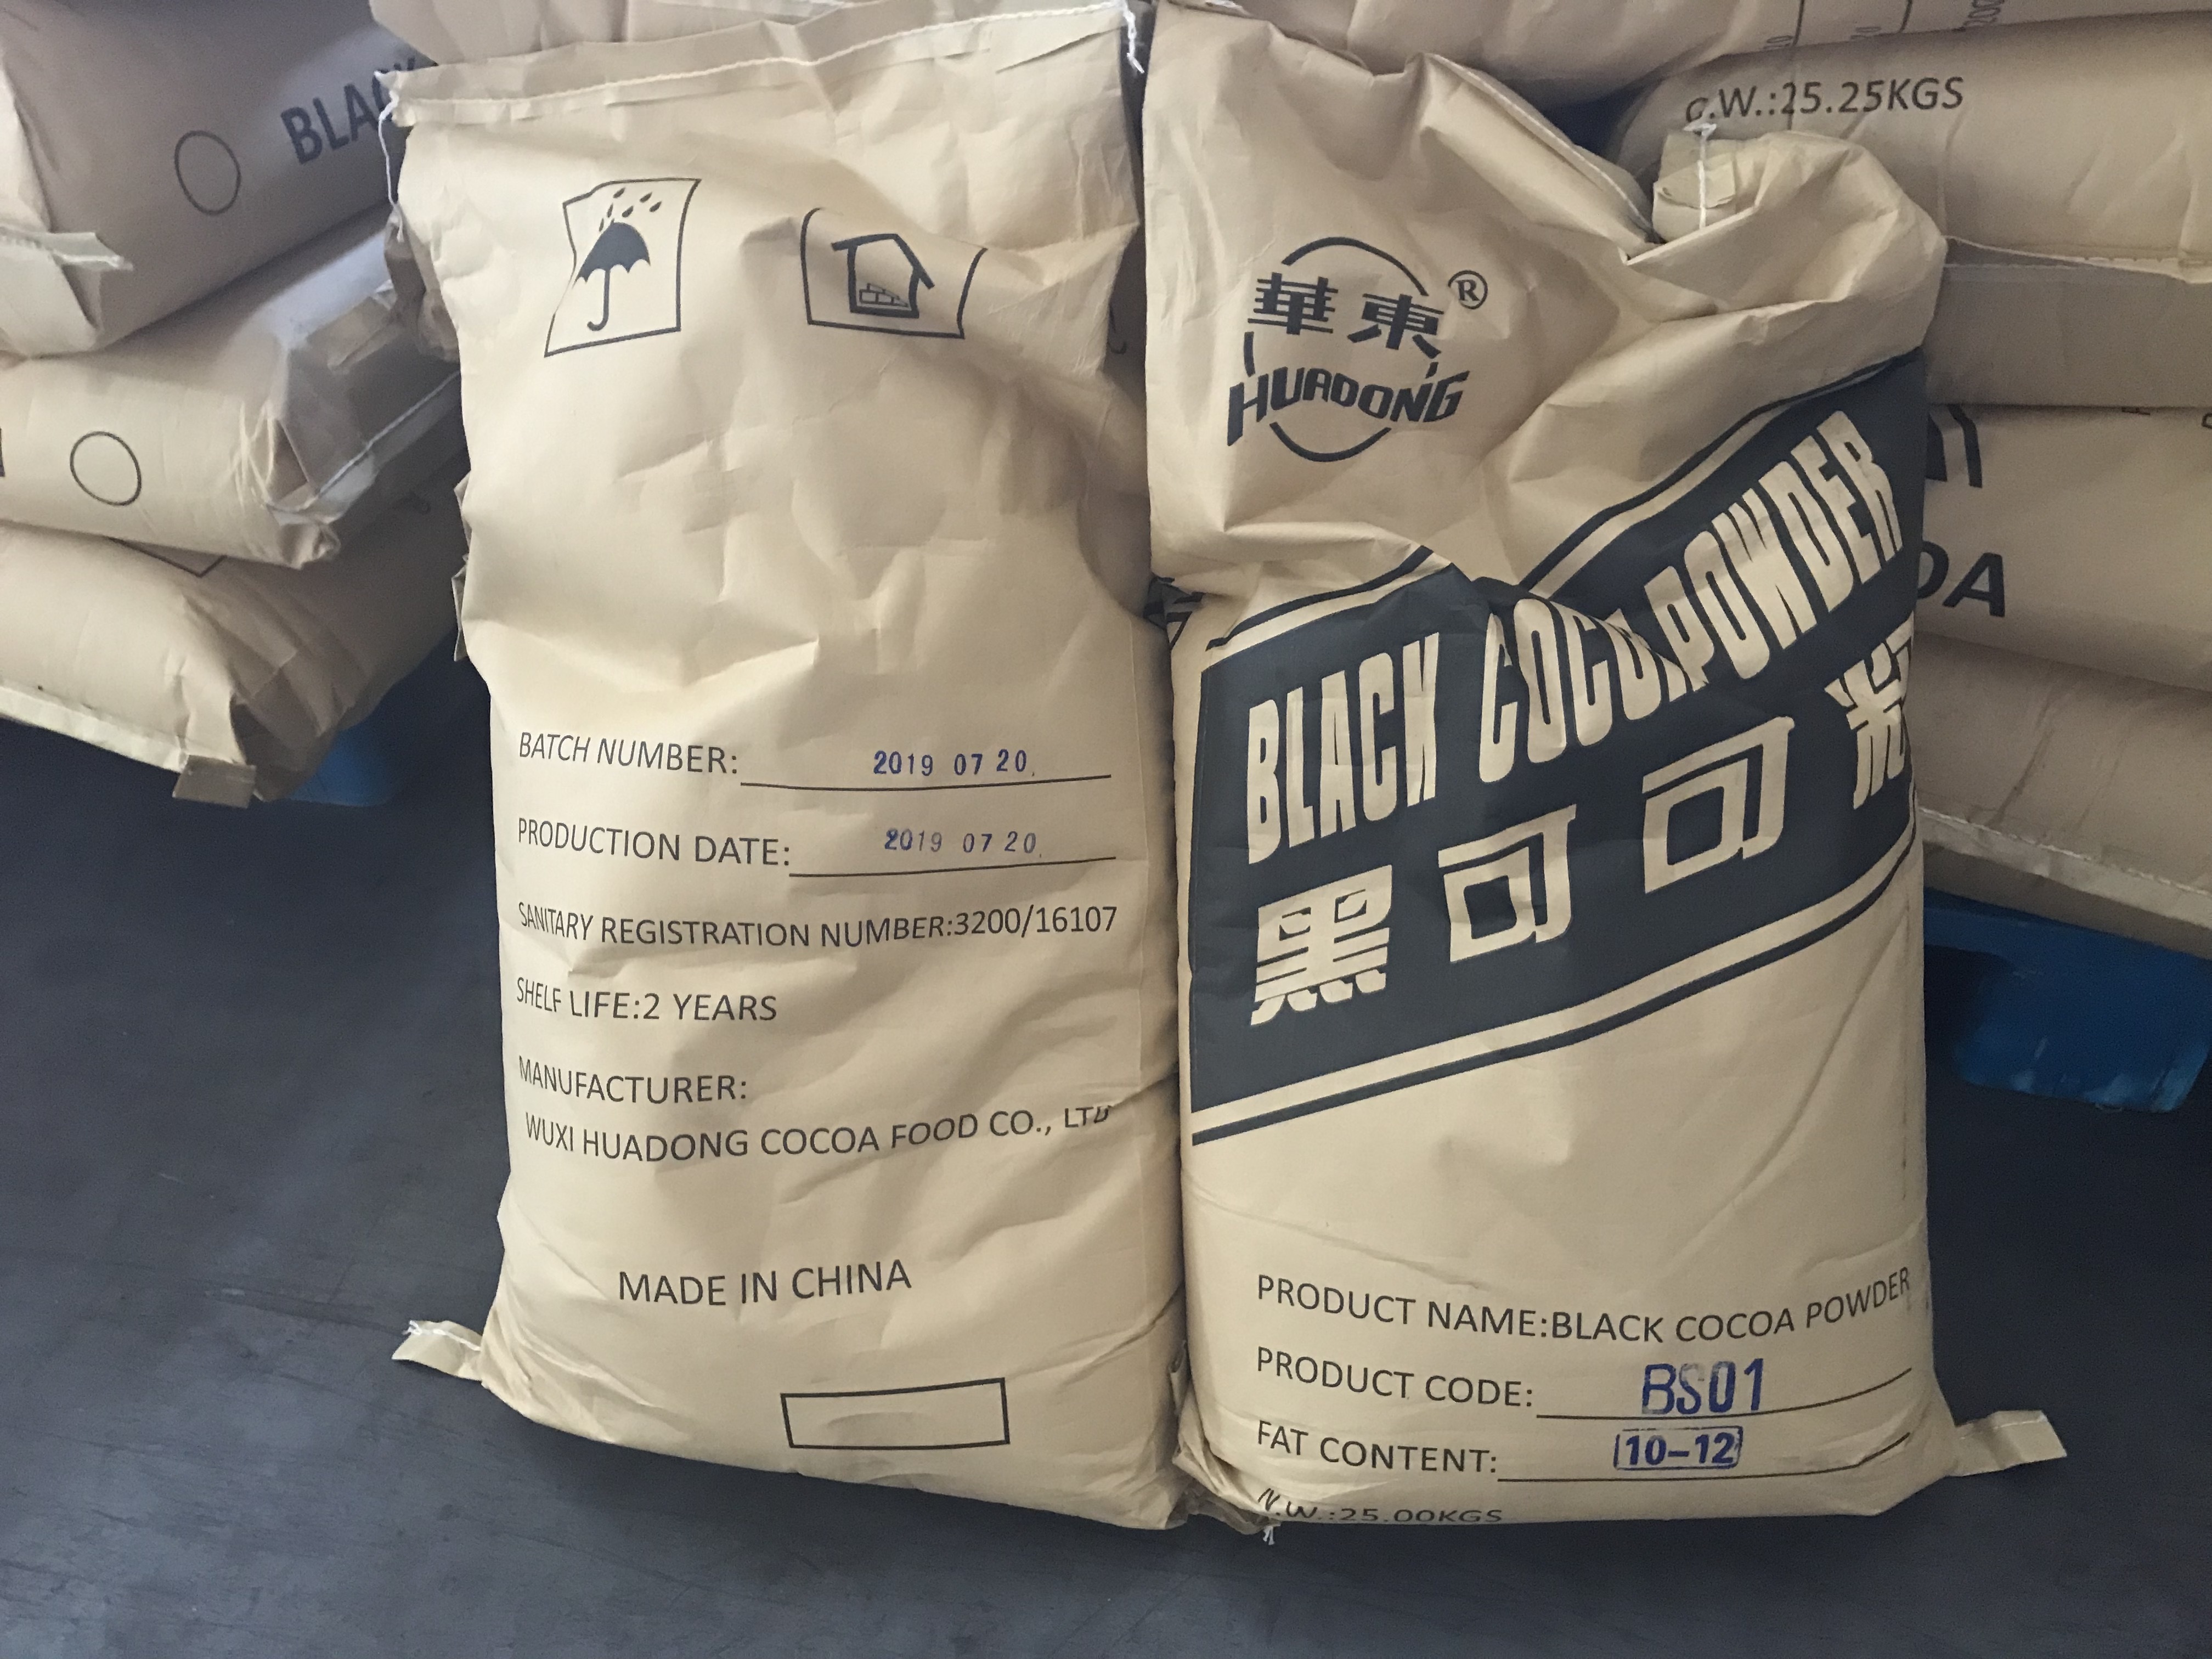 Black Cocoa powder